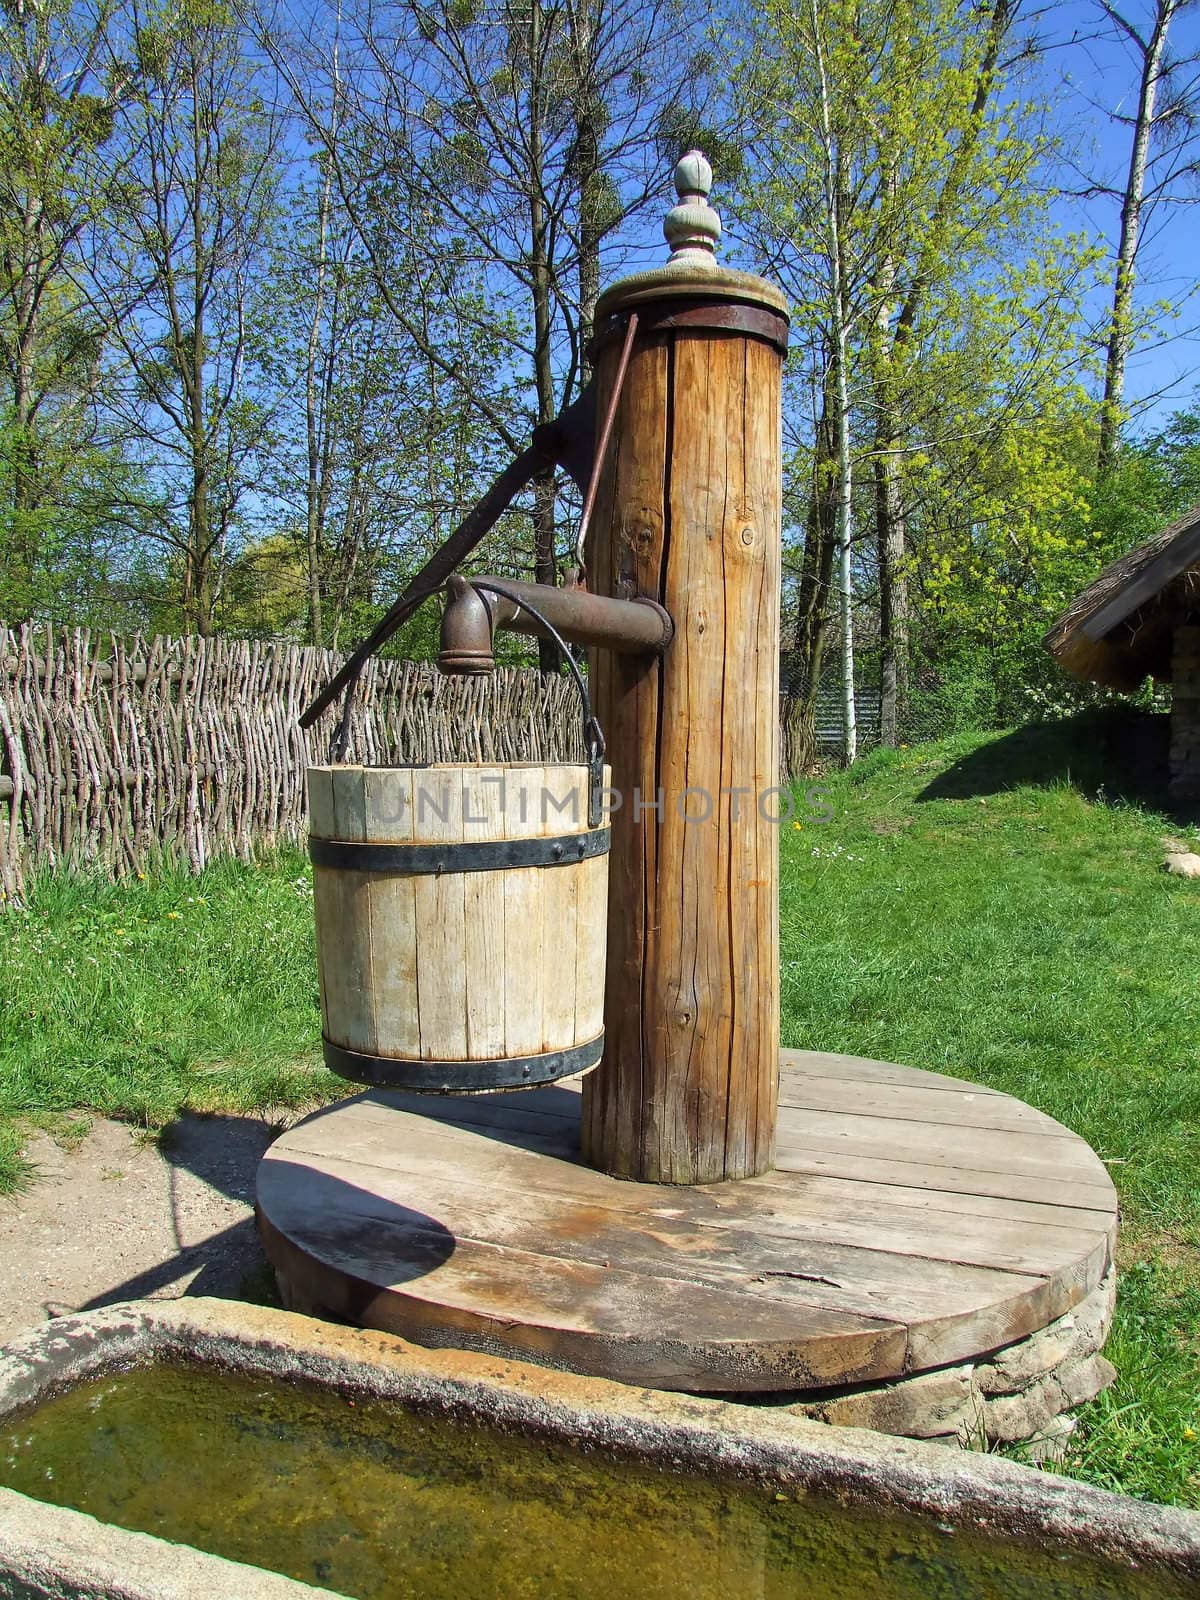 Old wooden pump in village, green grass around